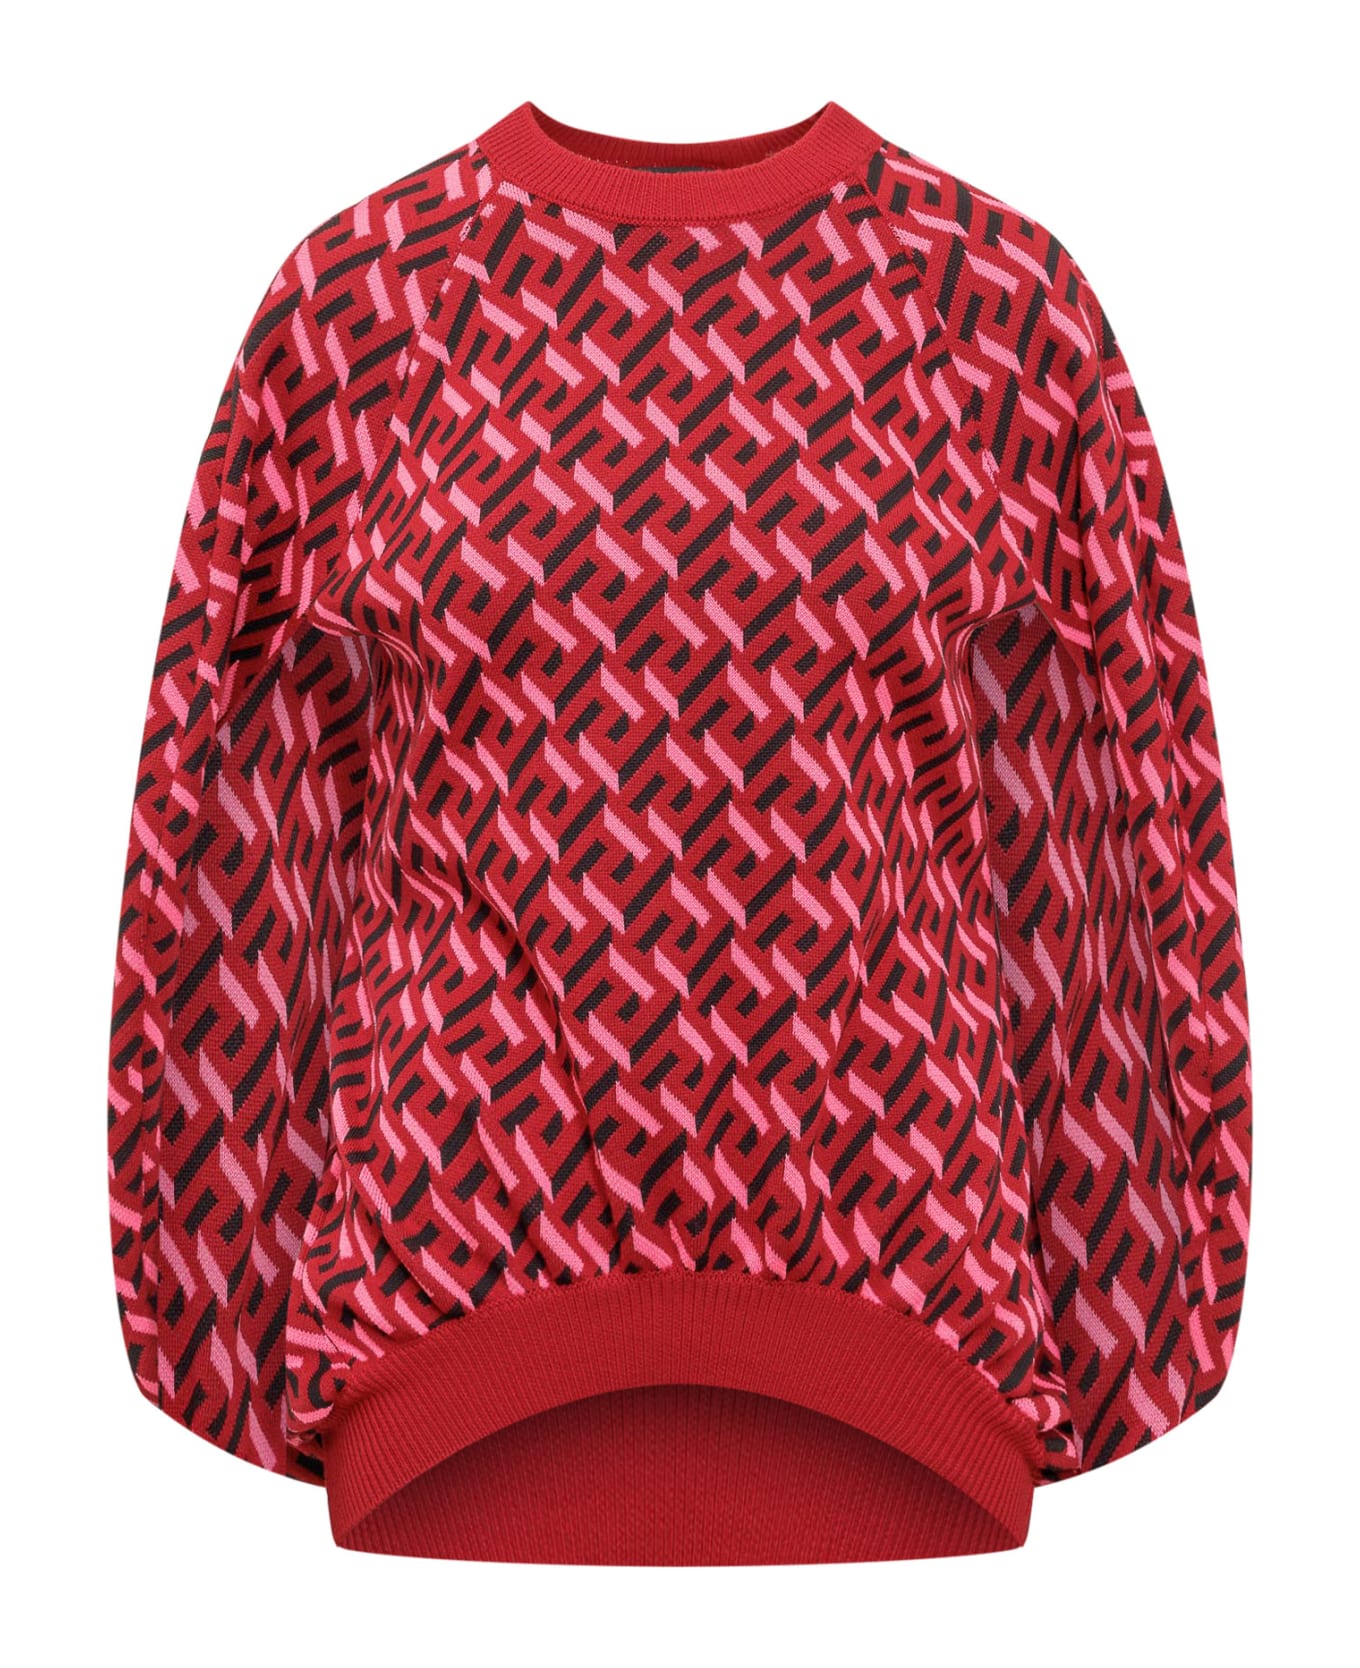 Versace La Greca Sweater - PARED RED FUXIA